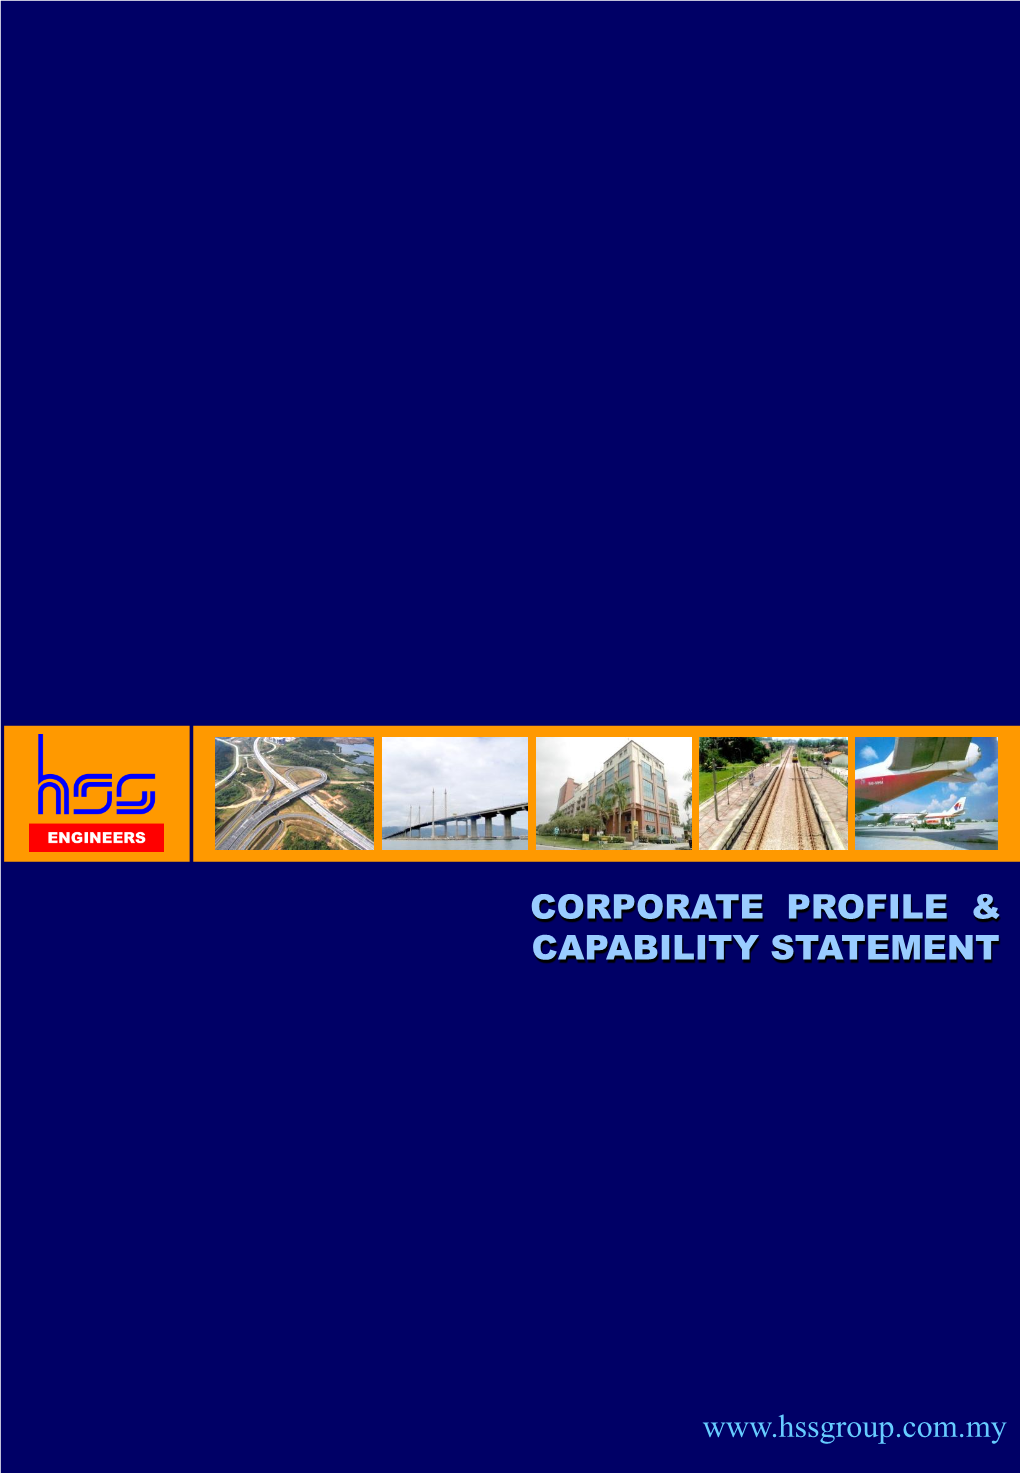 Corporate Profile & Capability Statement